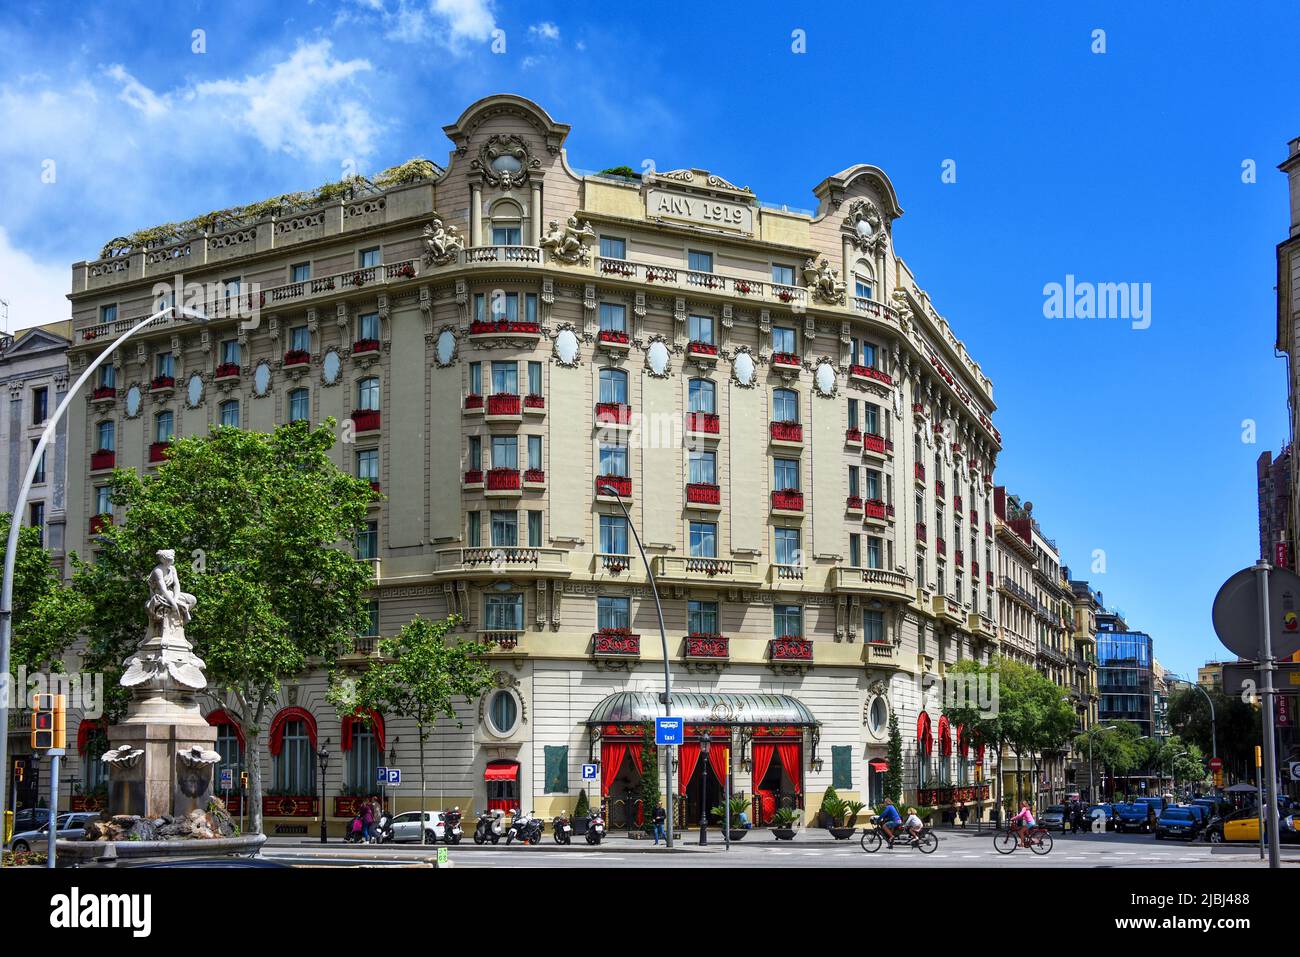 Barcelone, Espagne - 13 mai 2018: L'Hôtel El Palace Barcelone, un hôtel de luxe 5 étoiles sur la Gran via des Corts Catalanes. Il était autrefois connu sous le nom de TH Banque D'Images